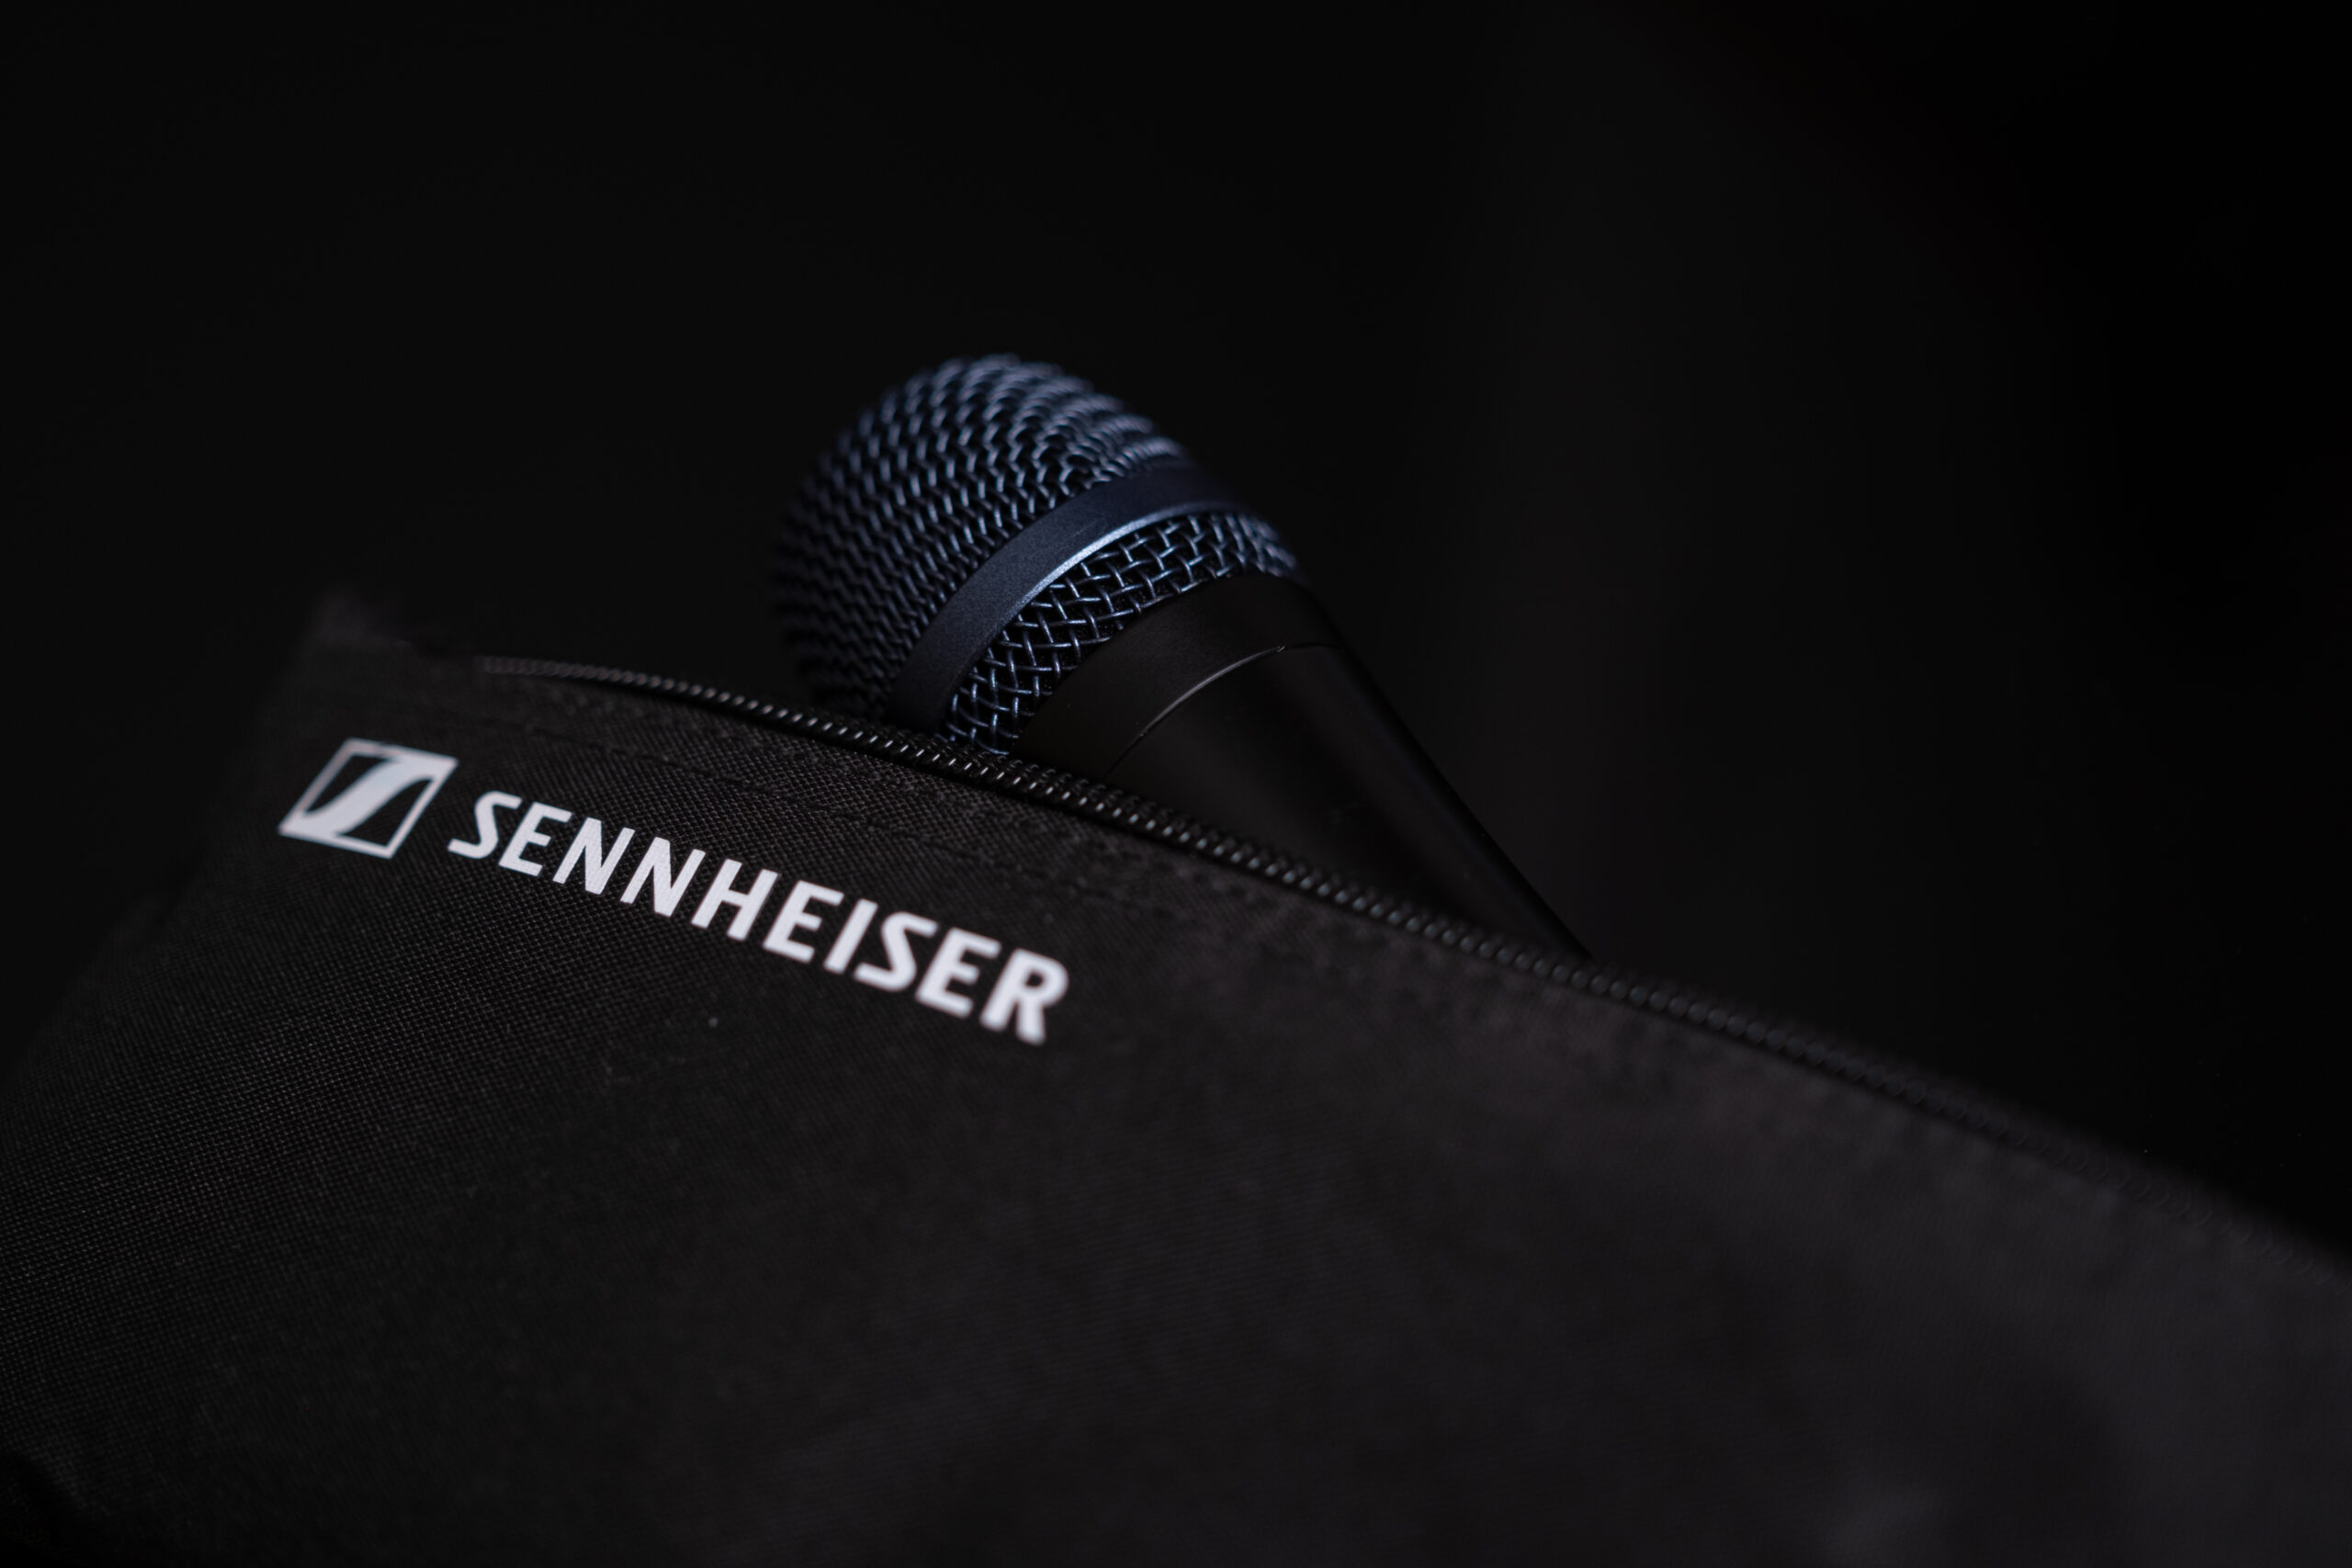 Ein Mikrofon liegt in einer Tasche, auf der der Schriftzug des Herstellers "Sennheiser" zu lesen ist